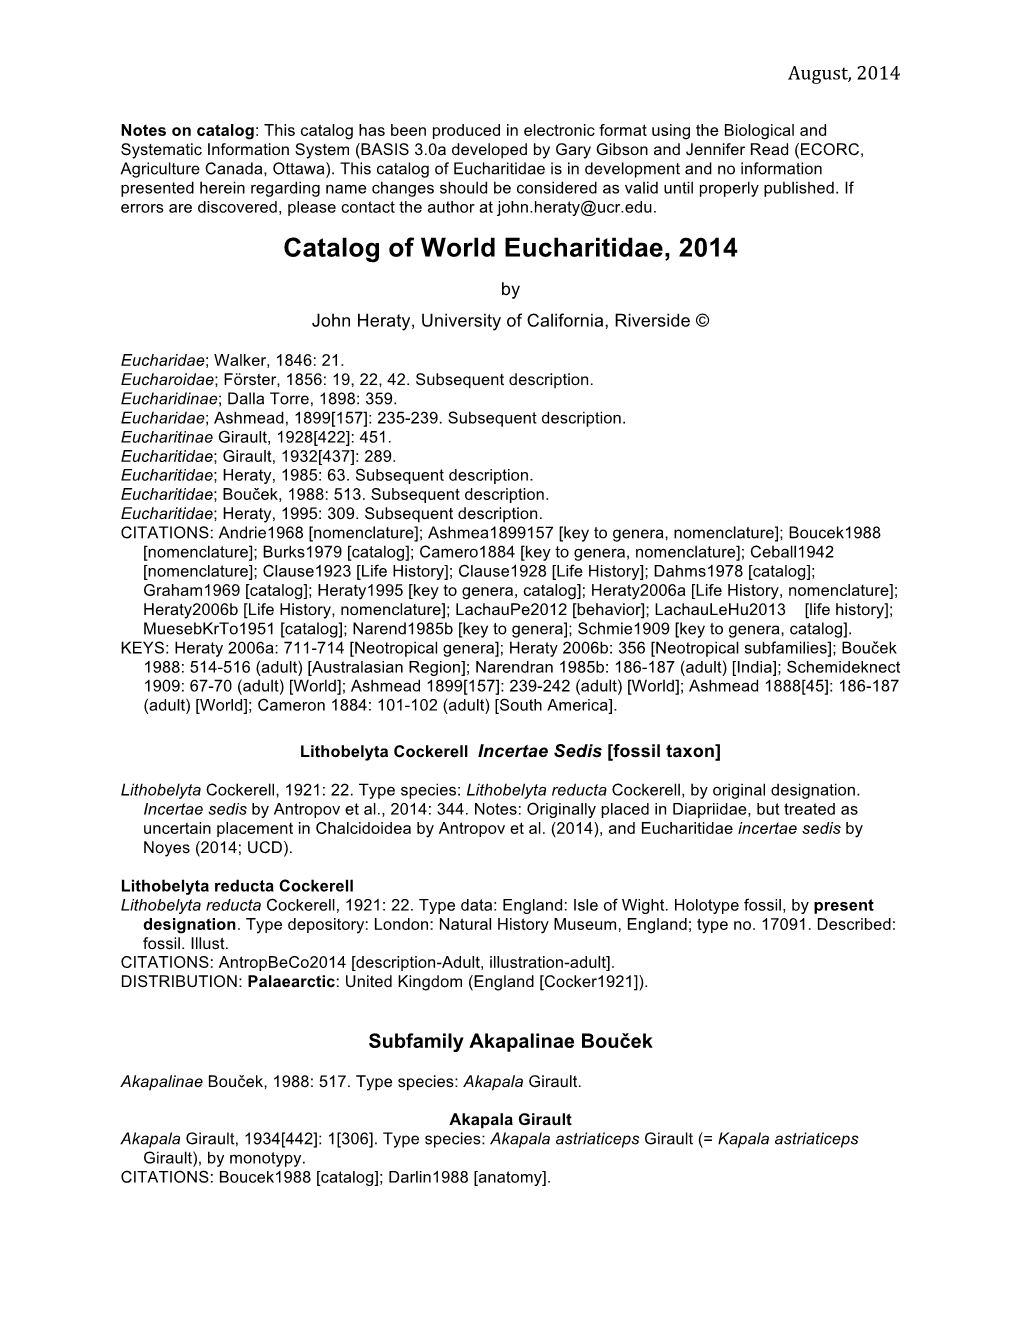 Catalog of World Eucharitidae, 2014